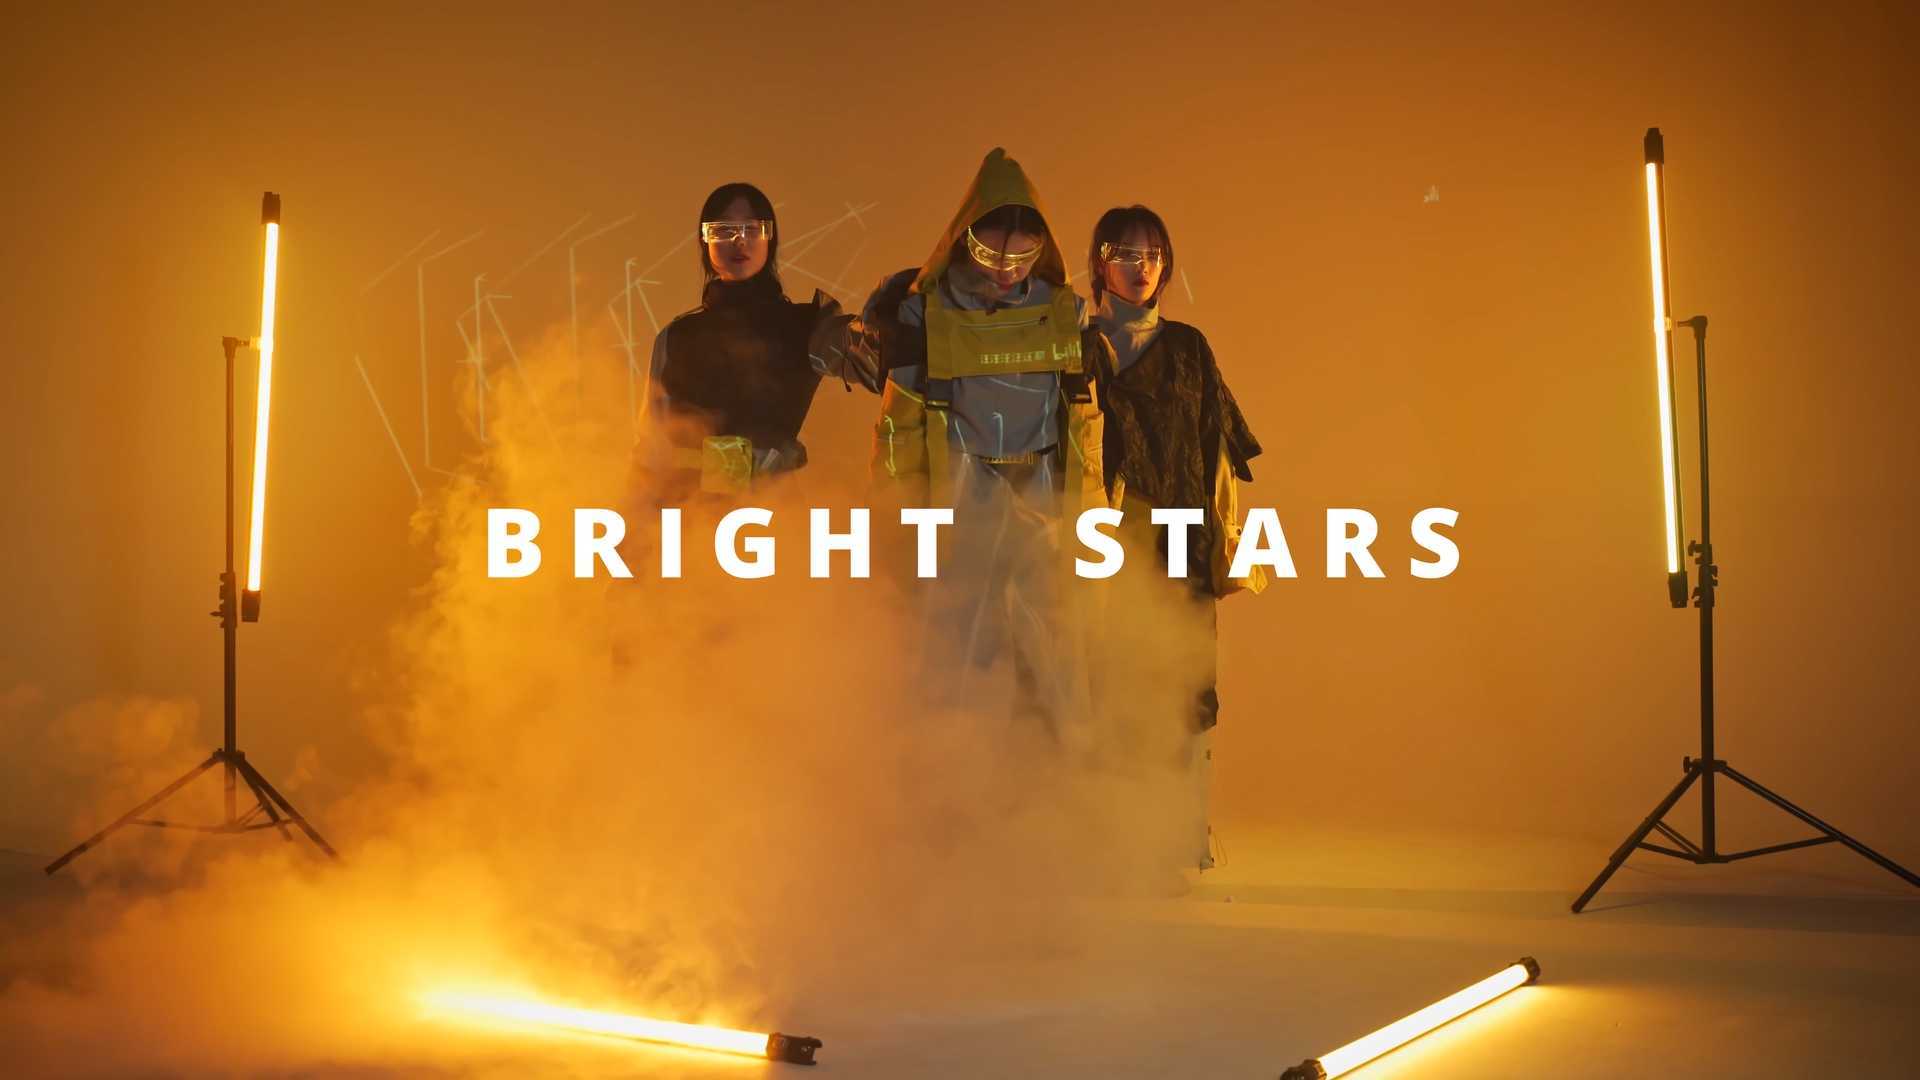 【毕设短片】长理服装毕设展-BrightStars